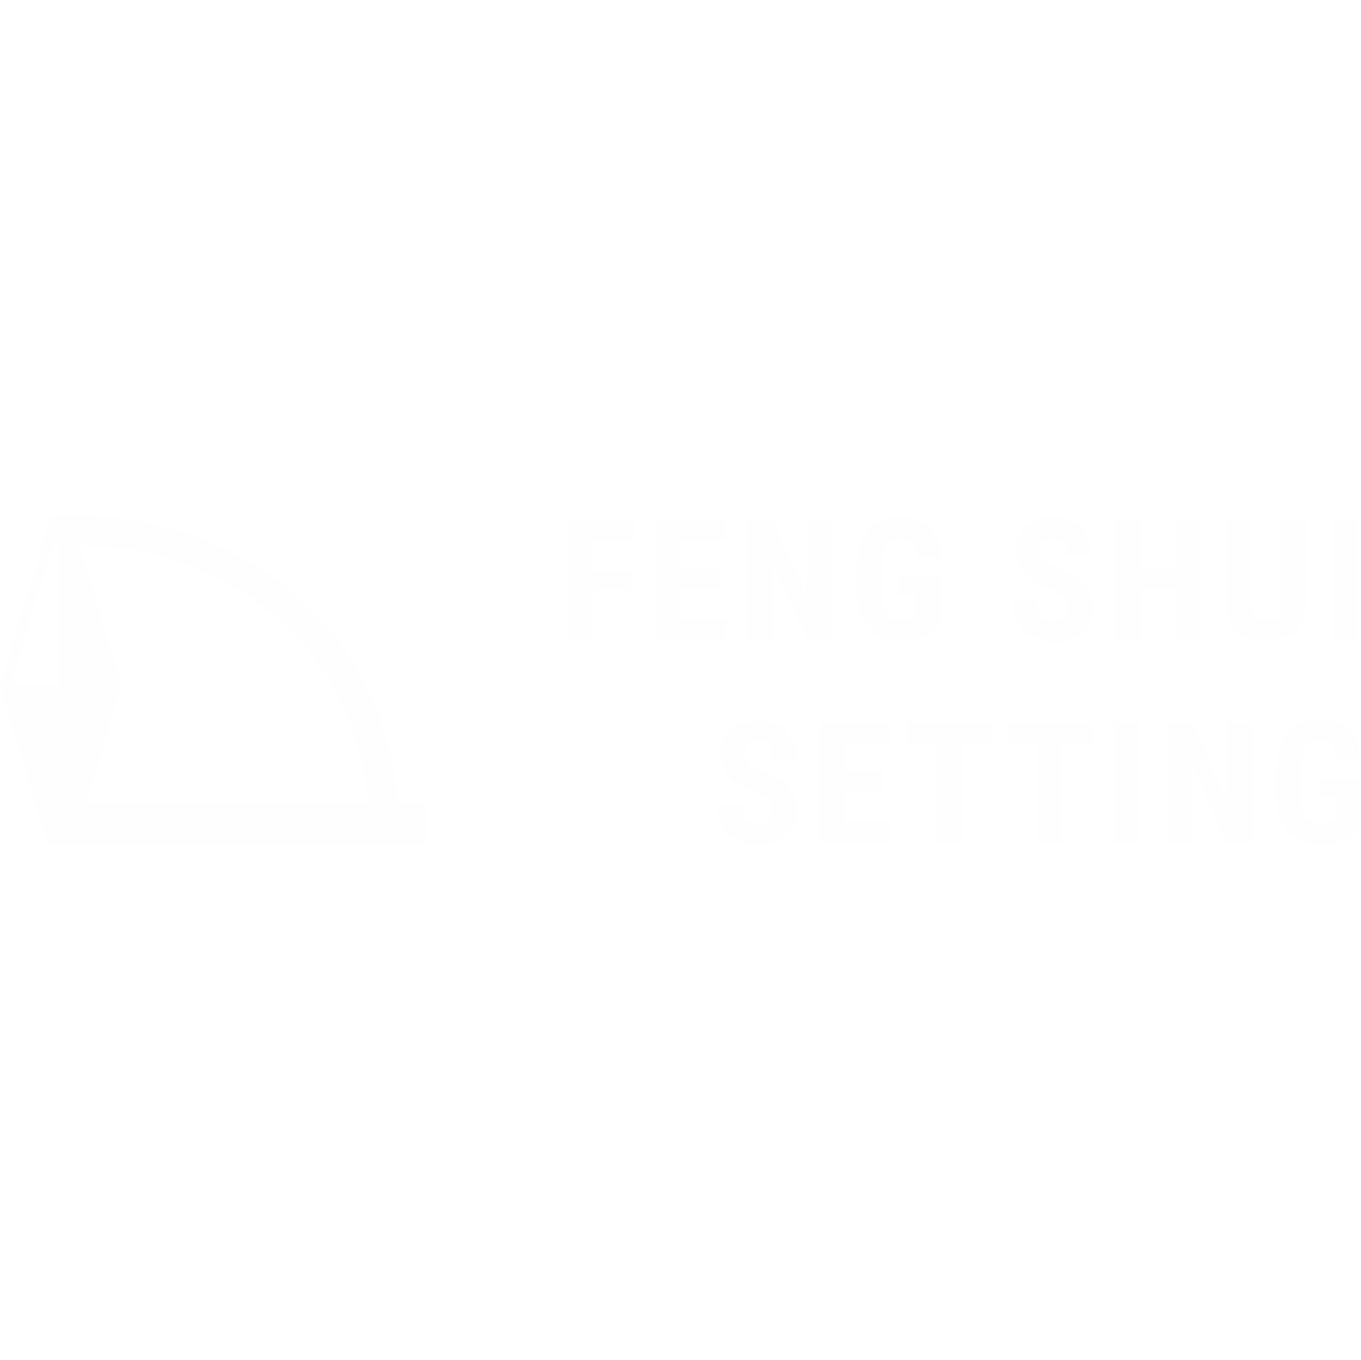 feng-shui-setting-logo